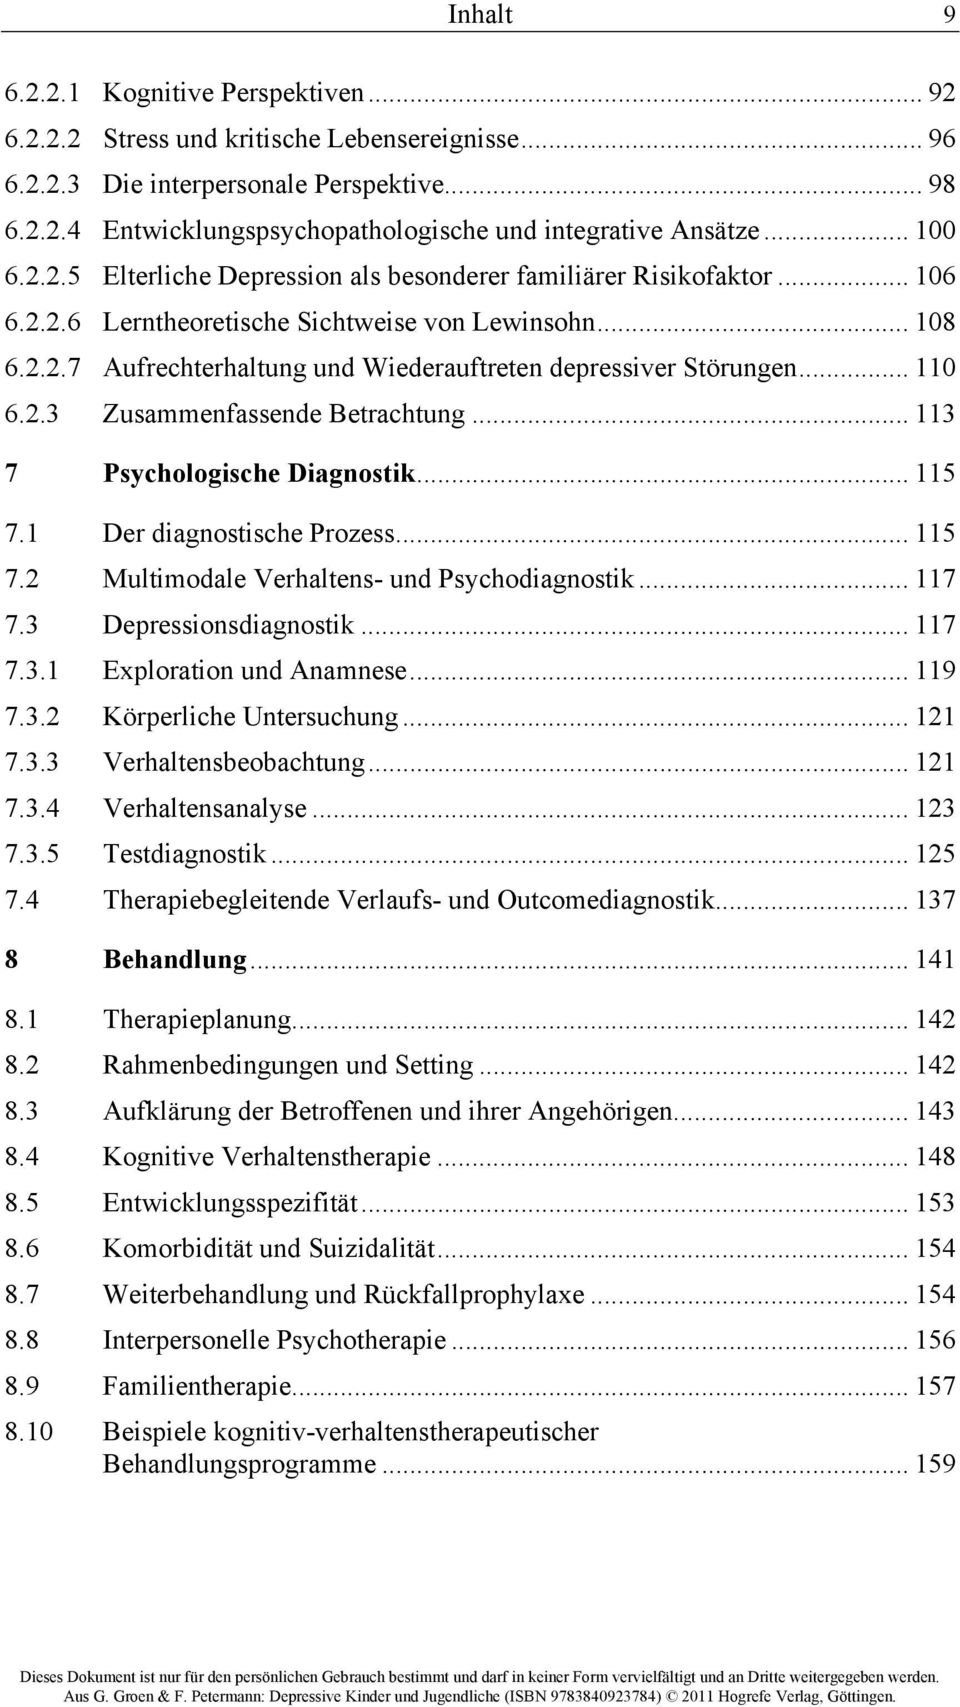 .. 110 6.2.3 Zusammenfassende Betrachtung... 113 7 Psychologische Diagnostik... 115 7.1 Der diagnostische Prozess... 115 7.2 Multimodale Verhaltens- und Psychodiagnostik... 117 7.